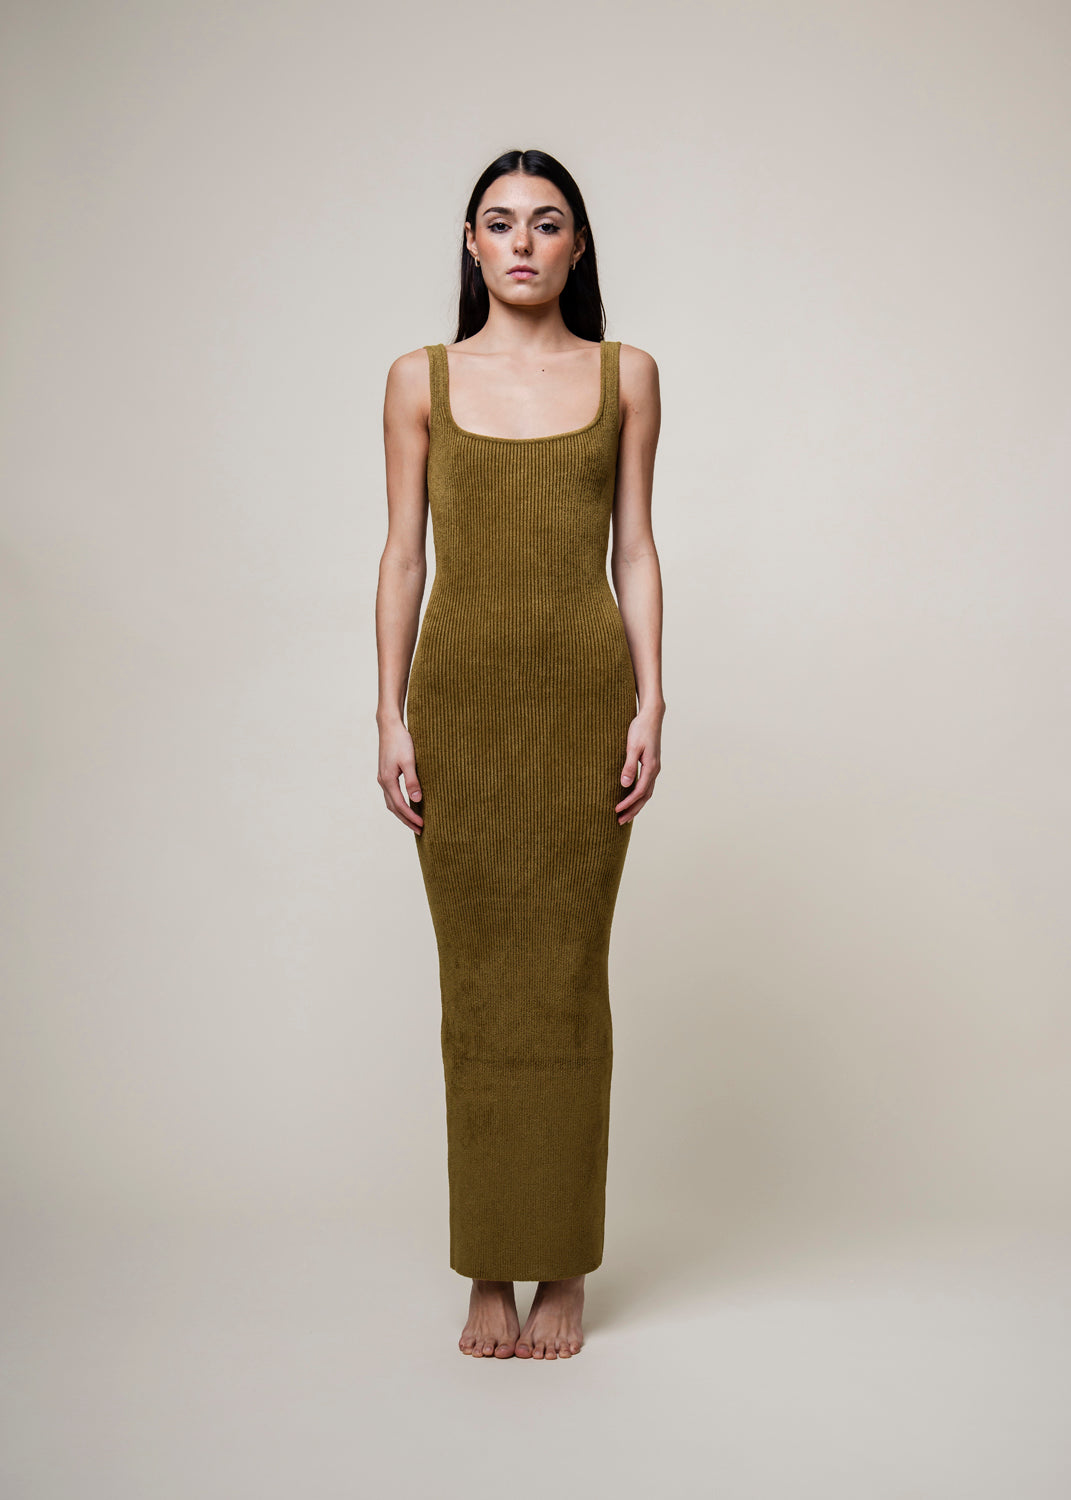 Etia Knit Dress - Moss